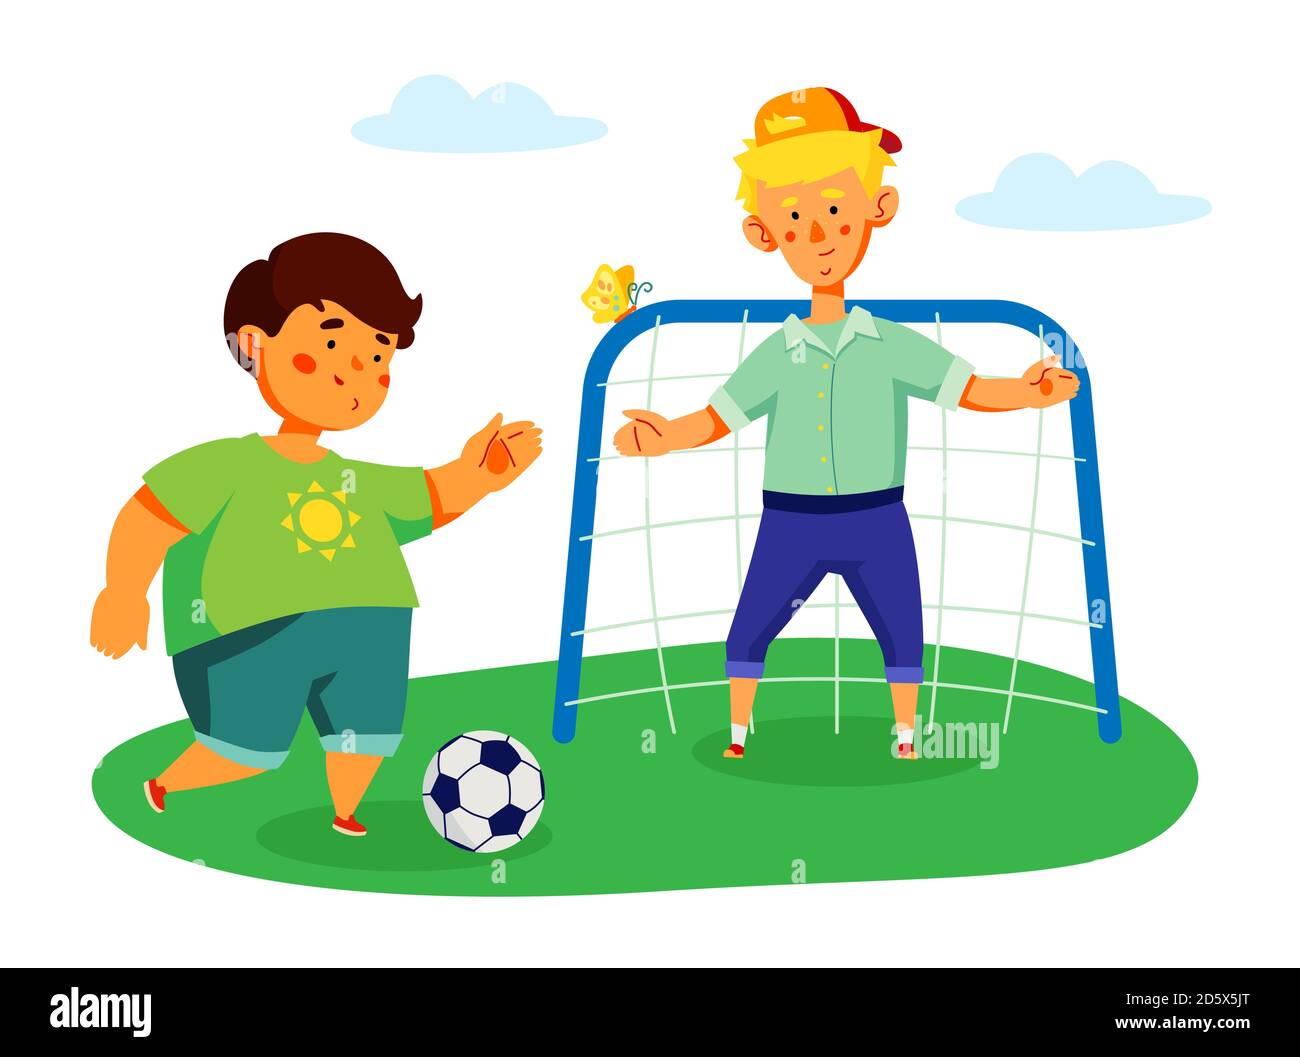 Bambini che giocano a calcio - disegno piatto colorato stile illustrazione  Immagine e Vettoriale - Alamy